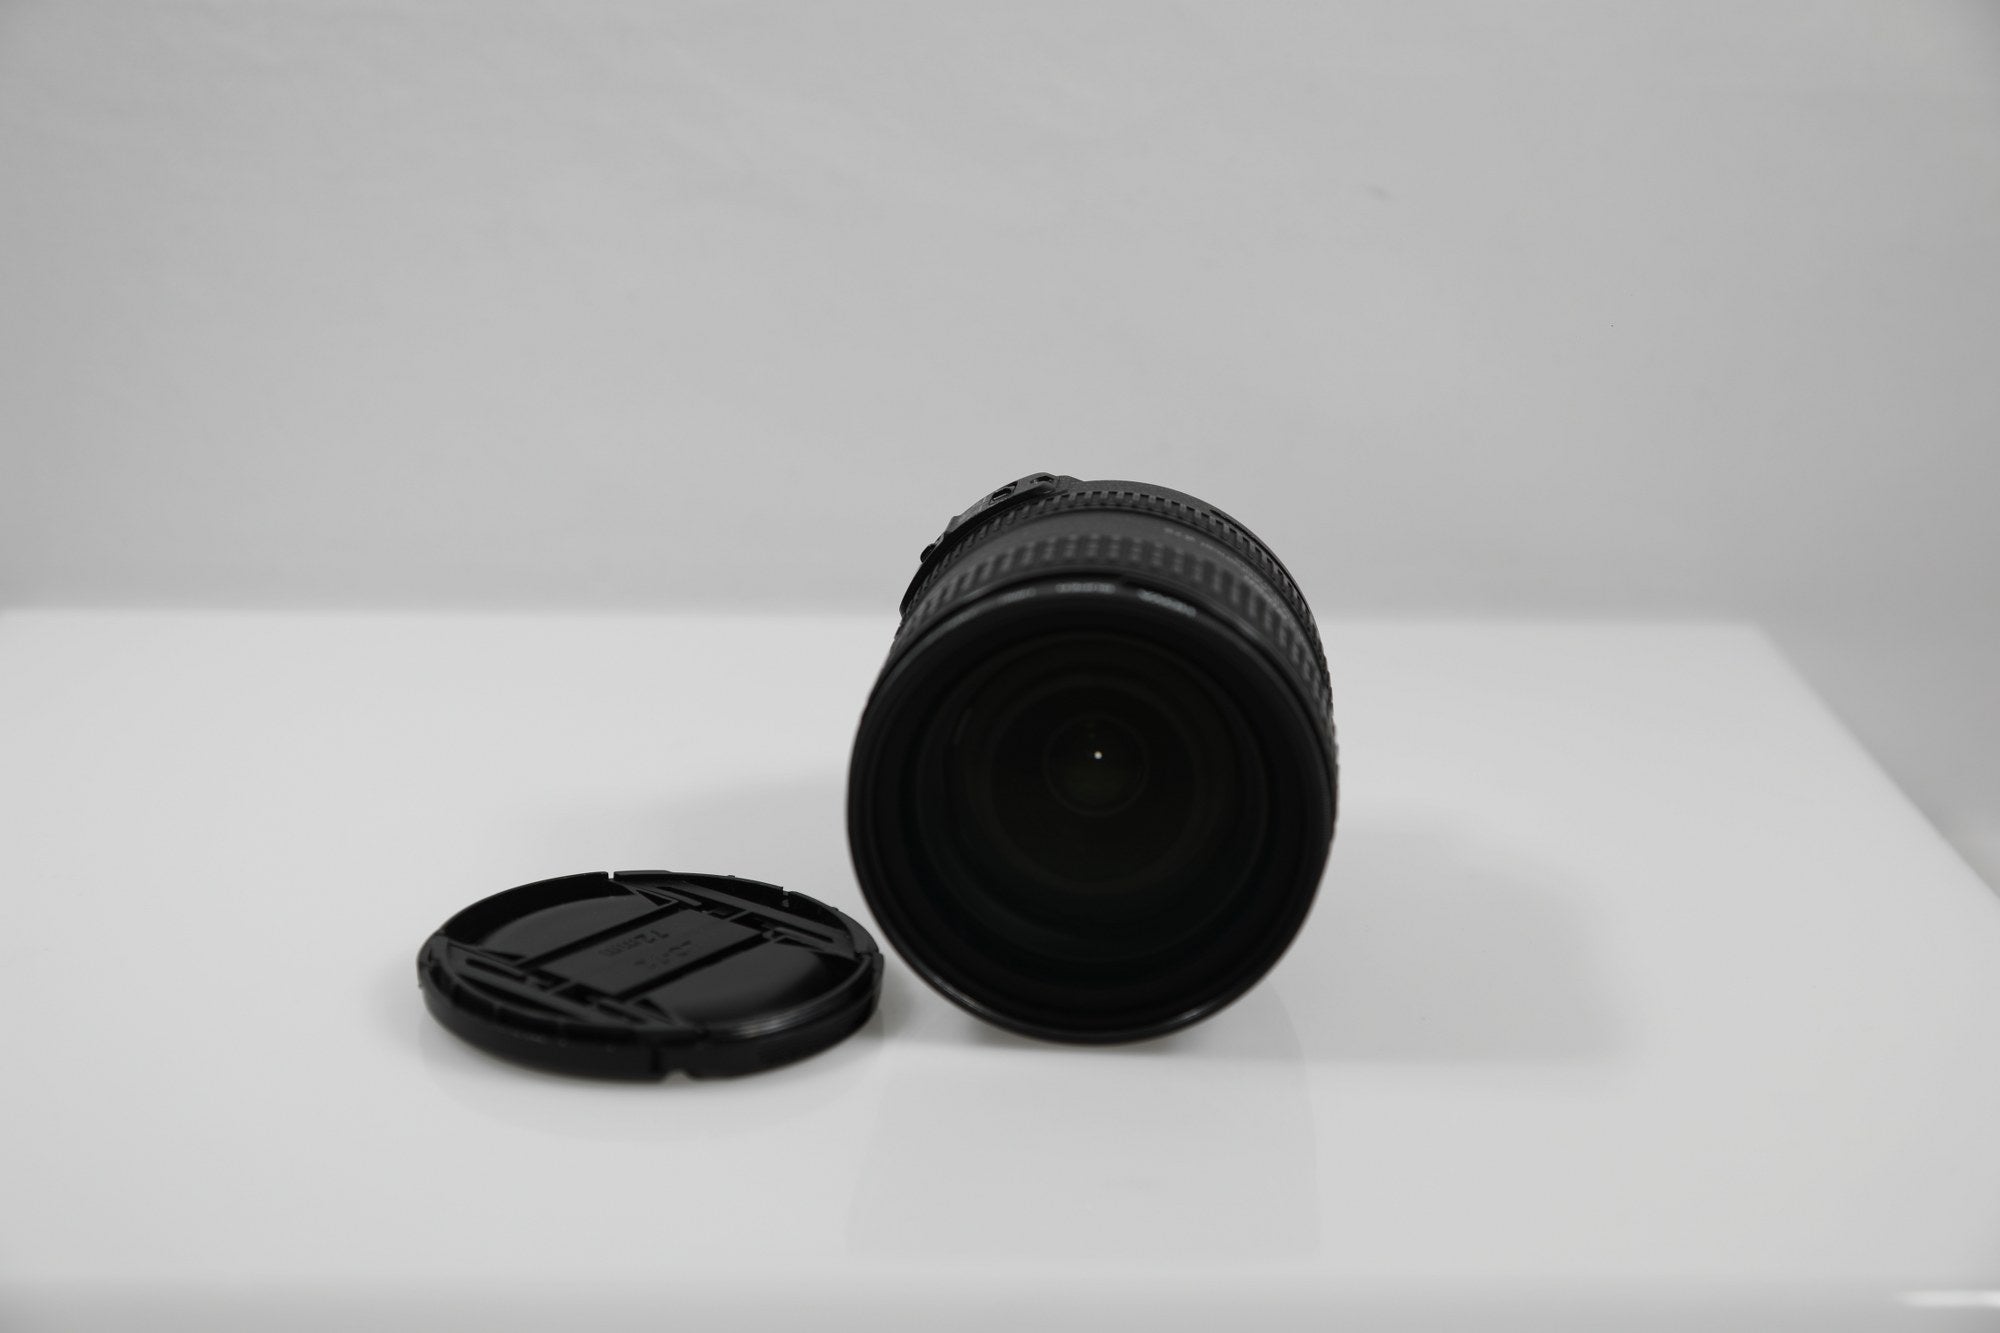 Nikon AF-S NIKKOR 24-85mm f/3.5-4.5G ED VR Lens - Lente F-Mount/Formato FX